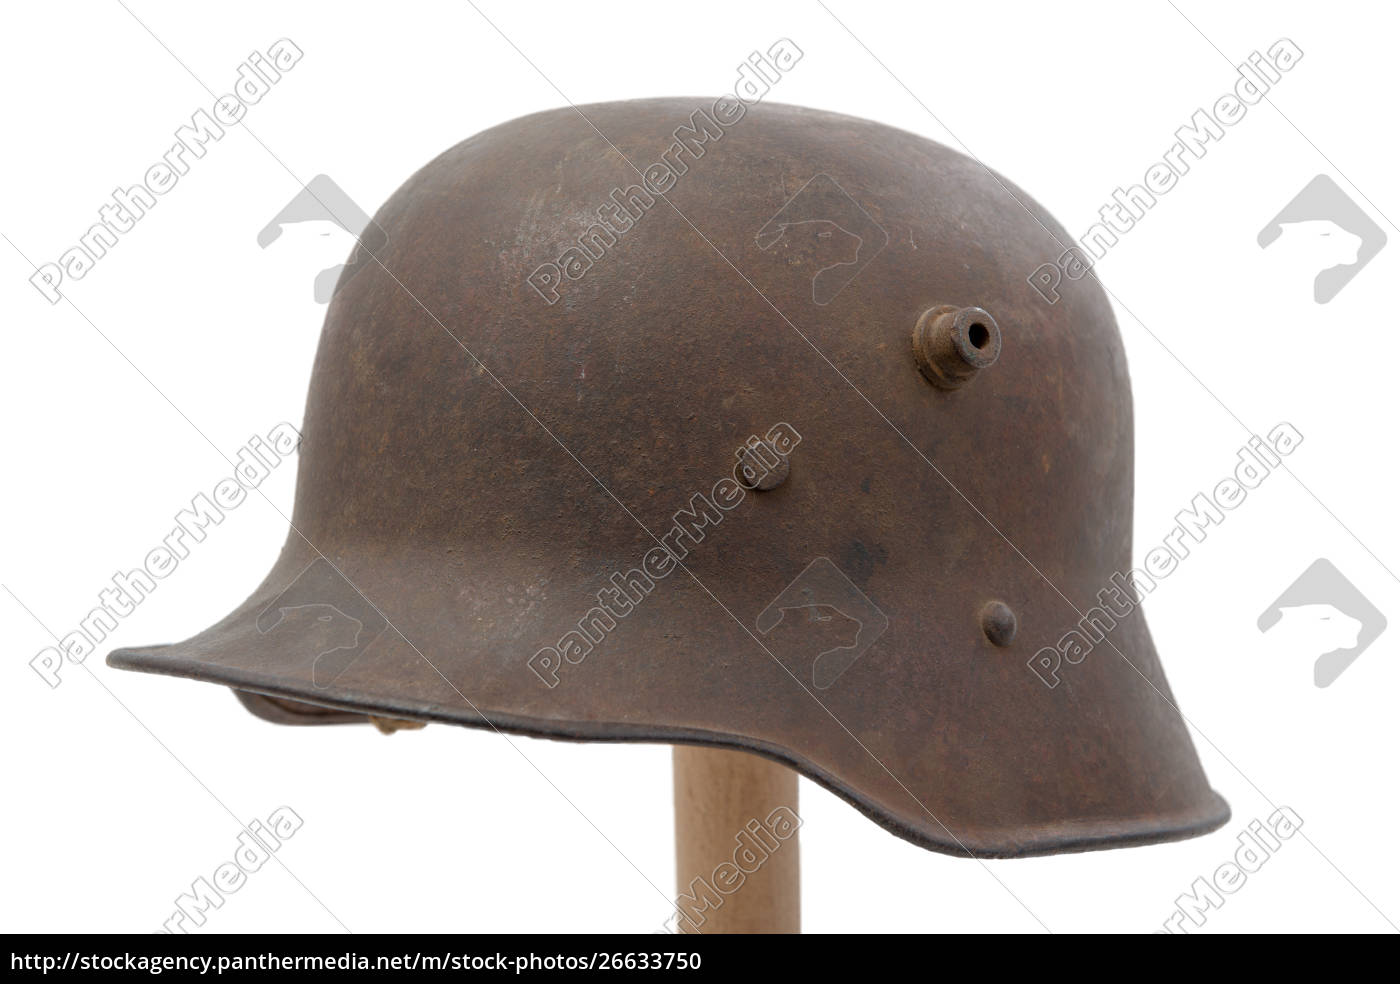 Elmetto militare tedesco della prima guerra mondiale - Stockphoto #26633750